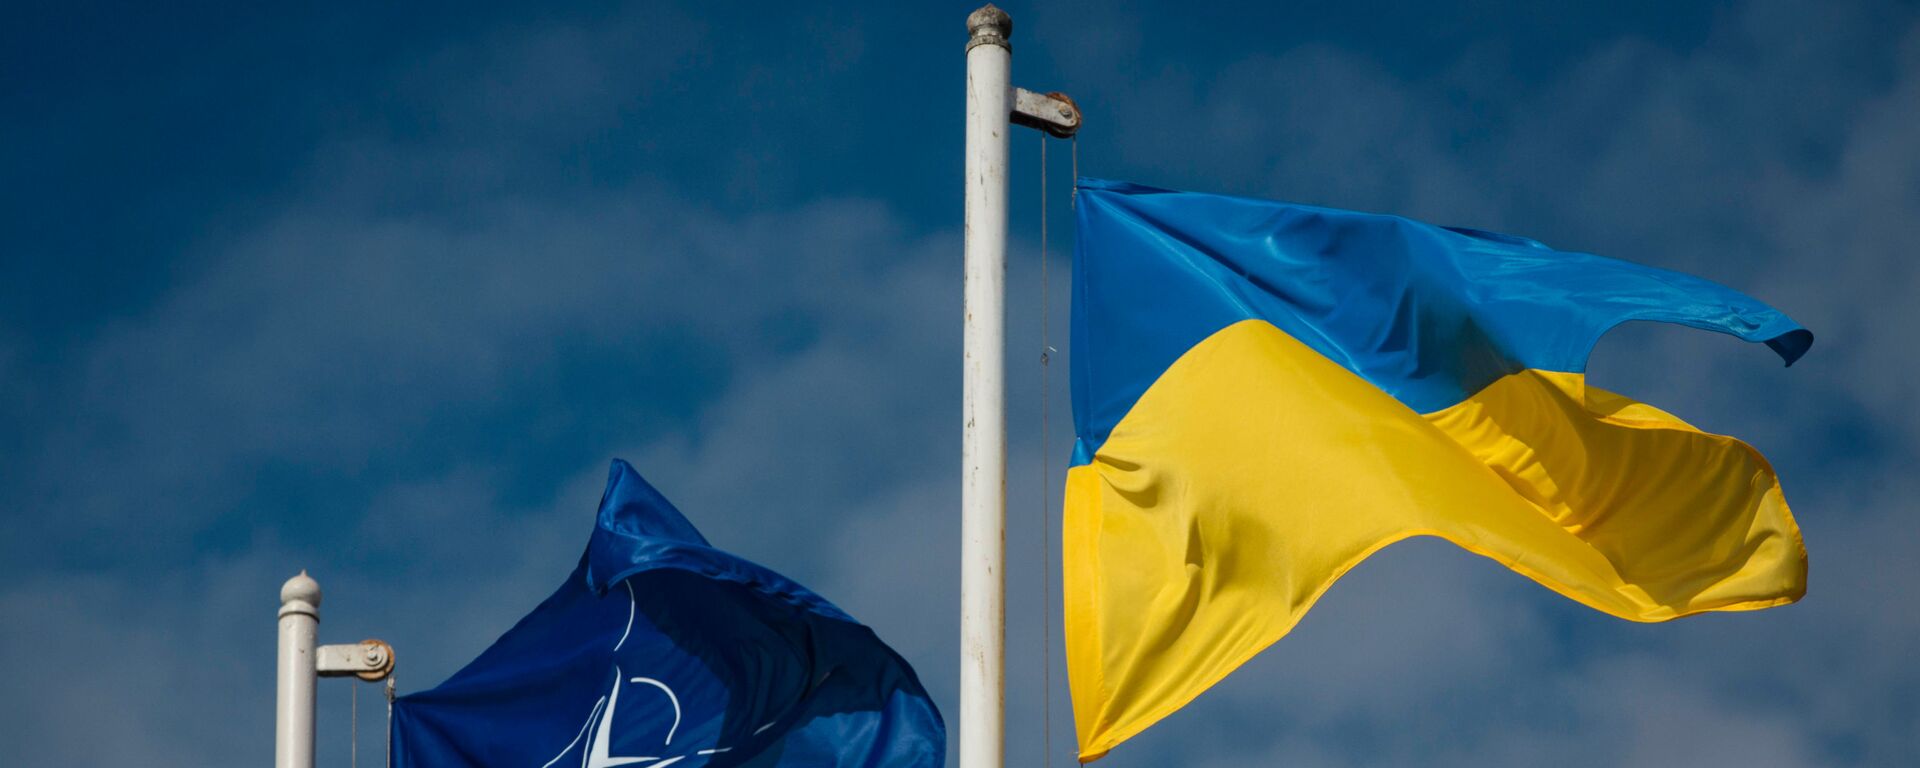 Национальный флаг Украины и флаг Организации Североатлантического договора (НАТО) - Sputnik Литва, 1920, 15.05.2021